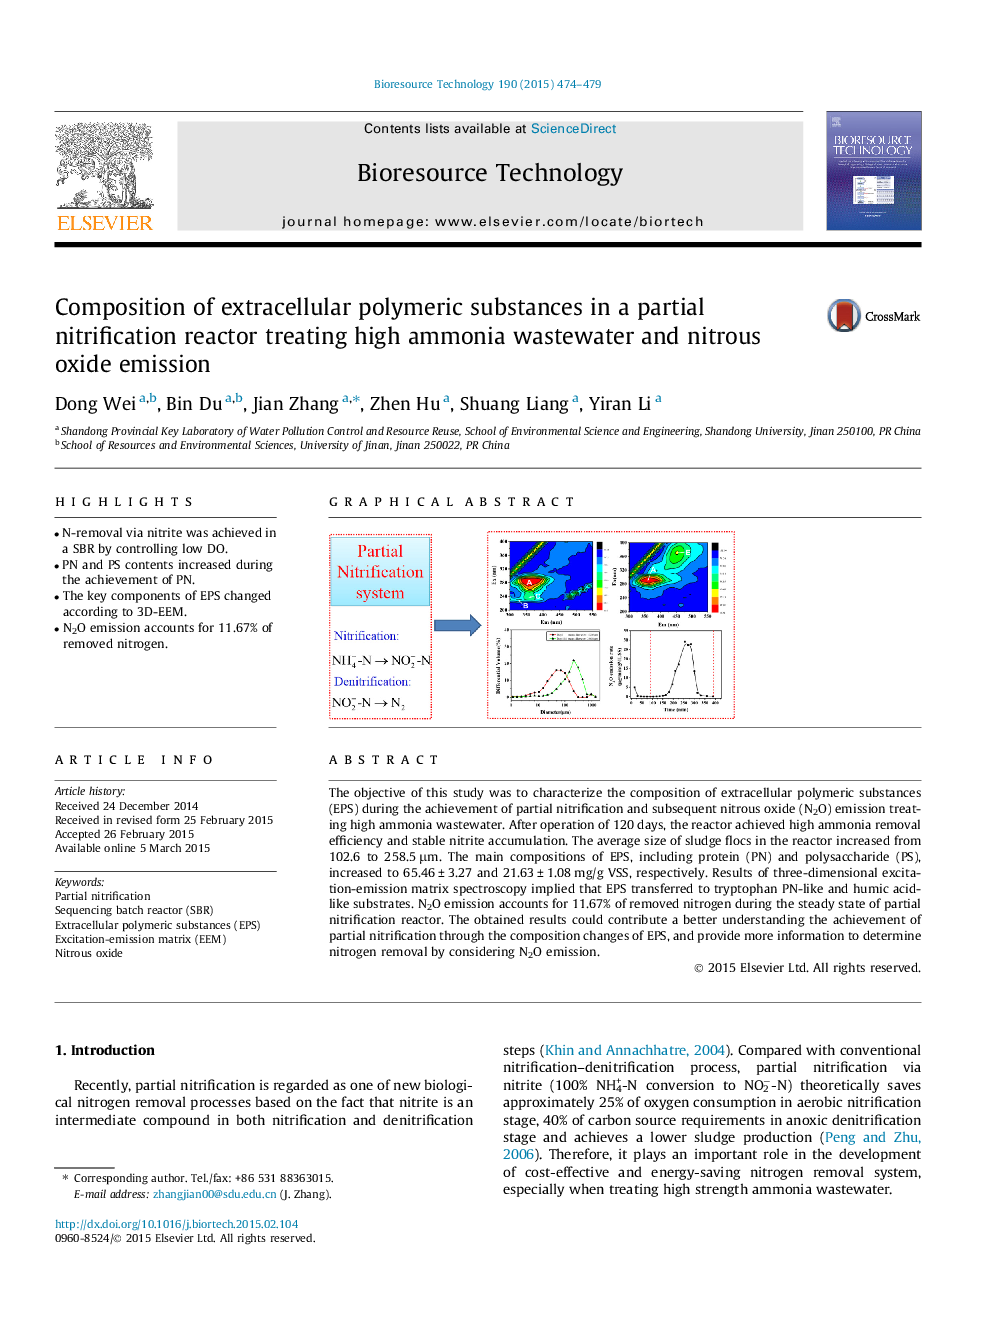 ترکیب مواد پلیمری خارج سلولی در یک واکنش نیتروژن منفذی با استفاده از فاضلاب آمونیاک بالا و انتشار اکسید نیتروژن 